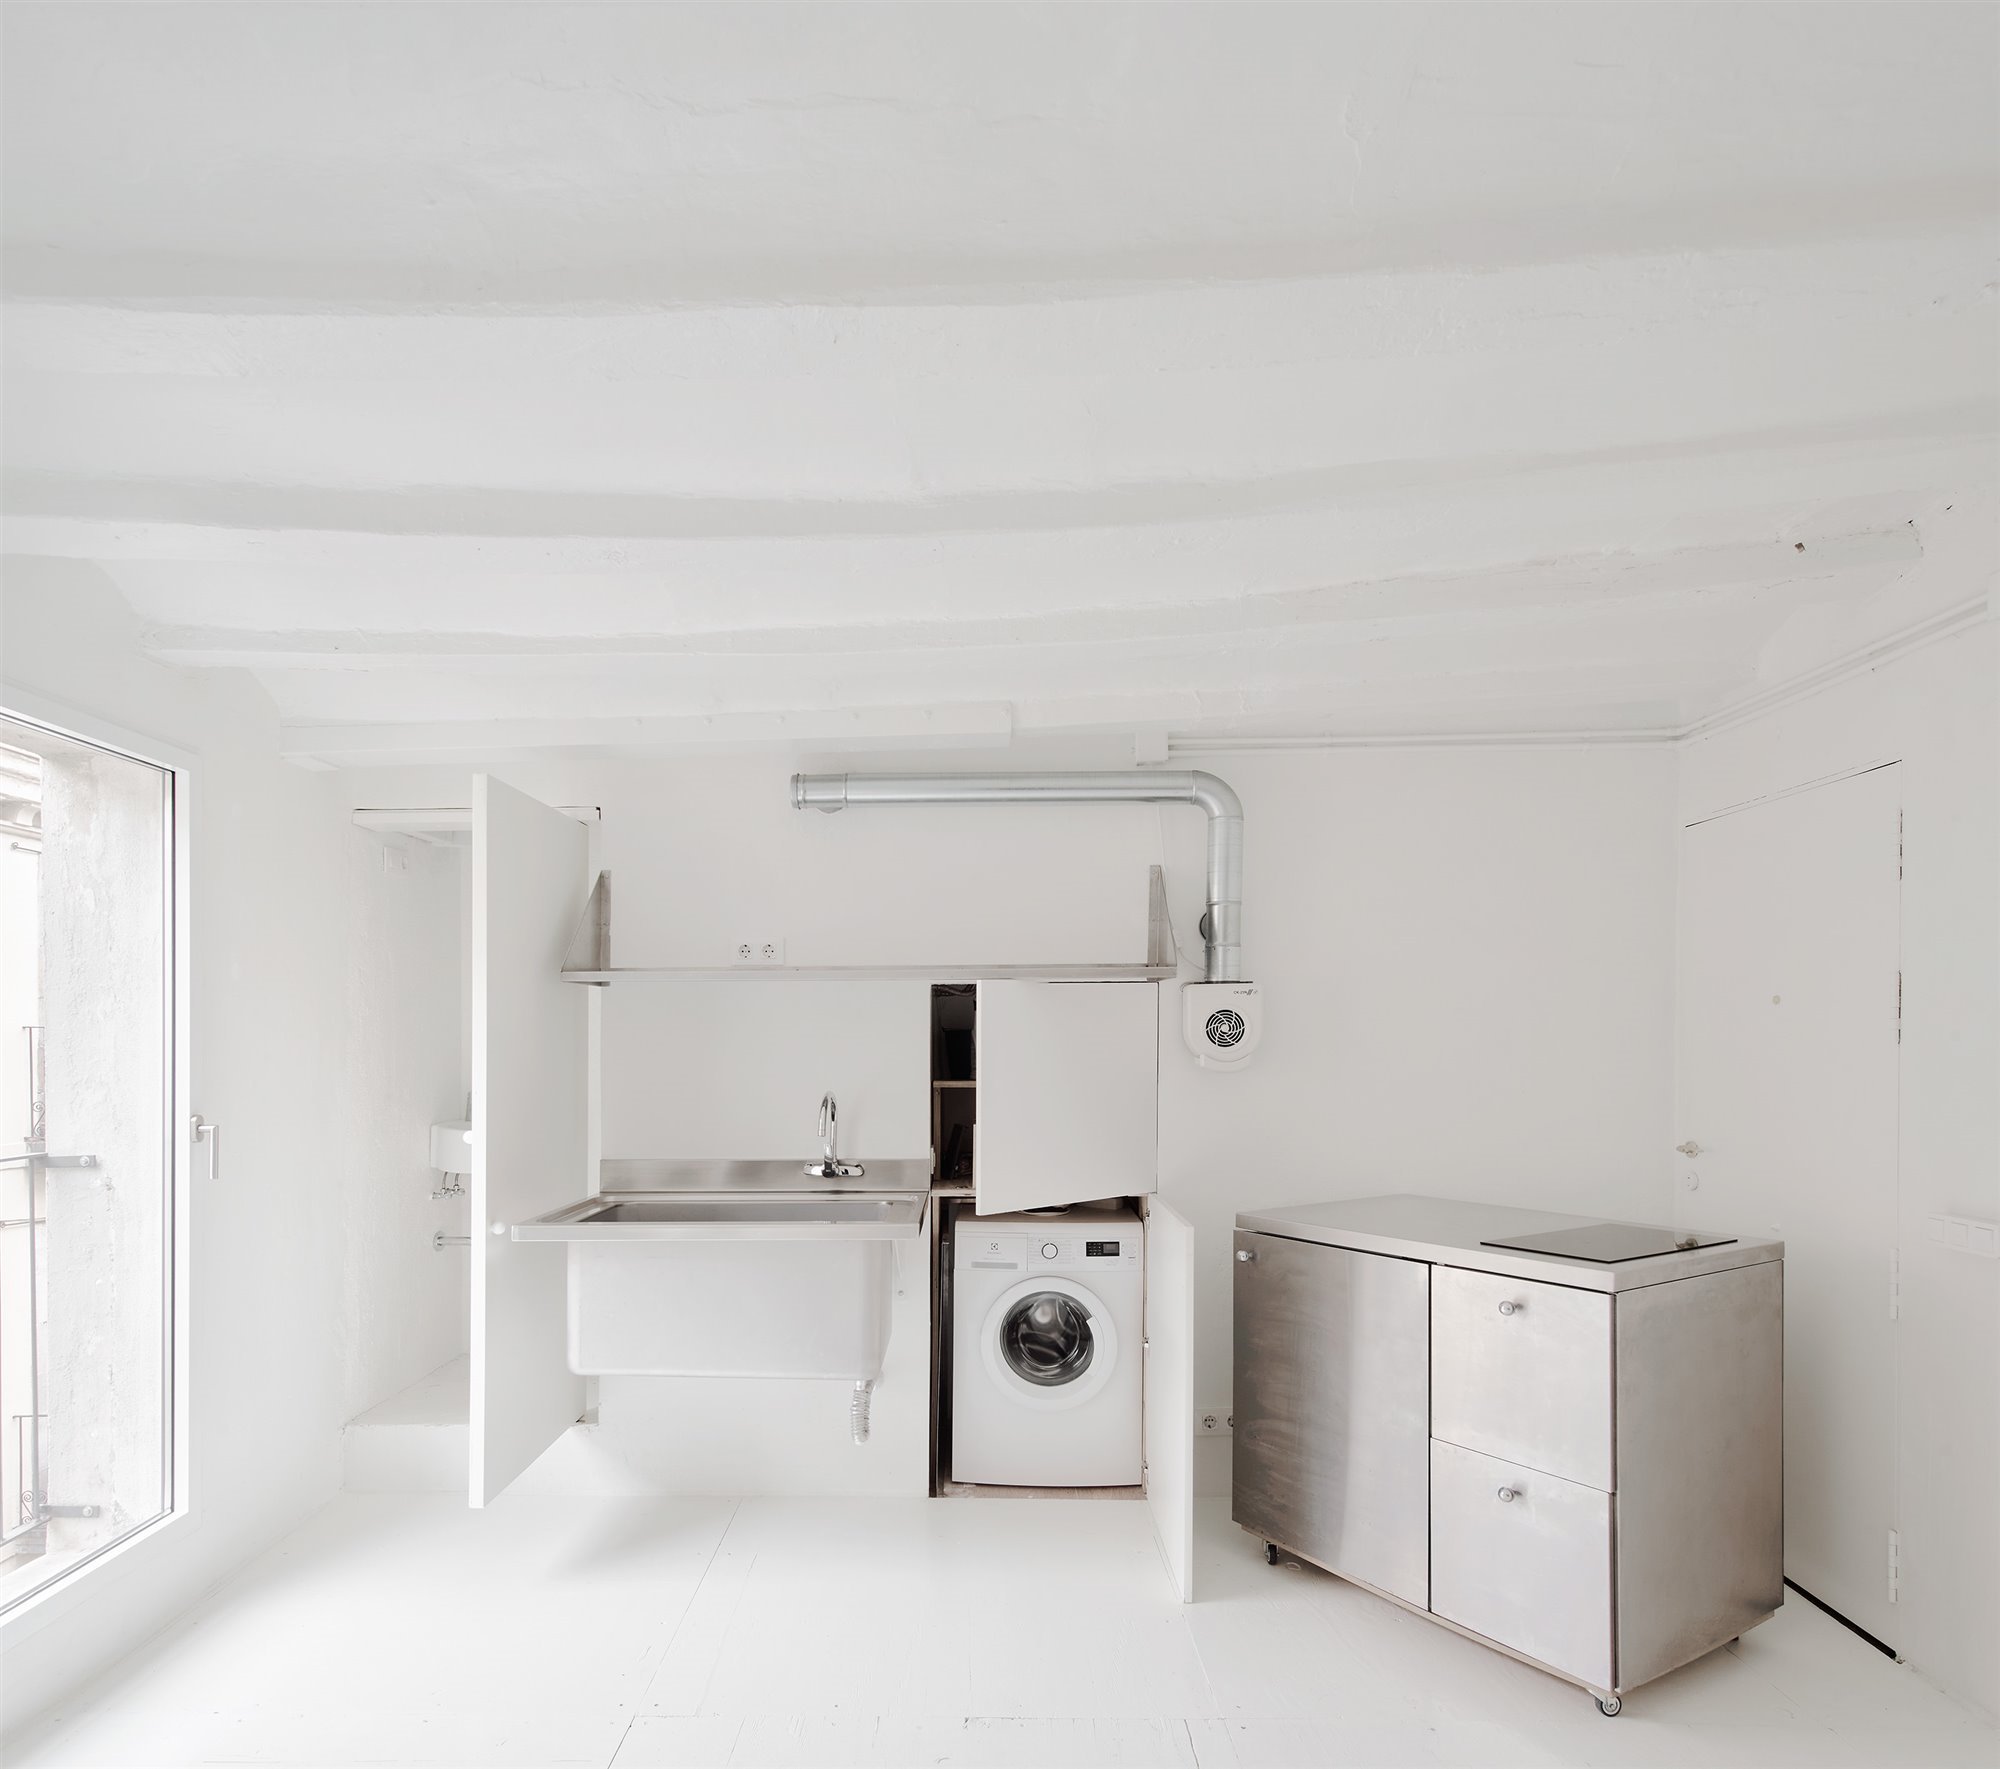 Armarios que aguardan estantes, electrodomésticos… en la casa-estudio de Jaime Fernández Laynez impera la versatilidad. Foto: José Hevia